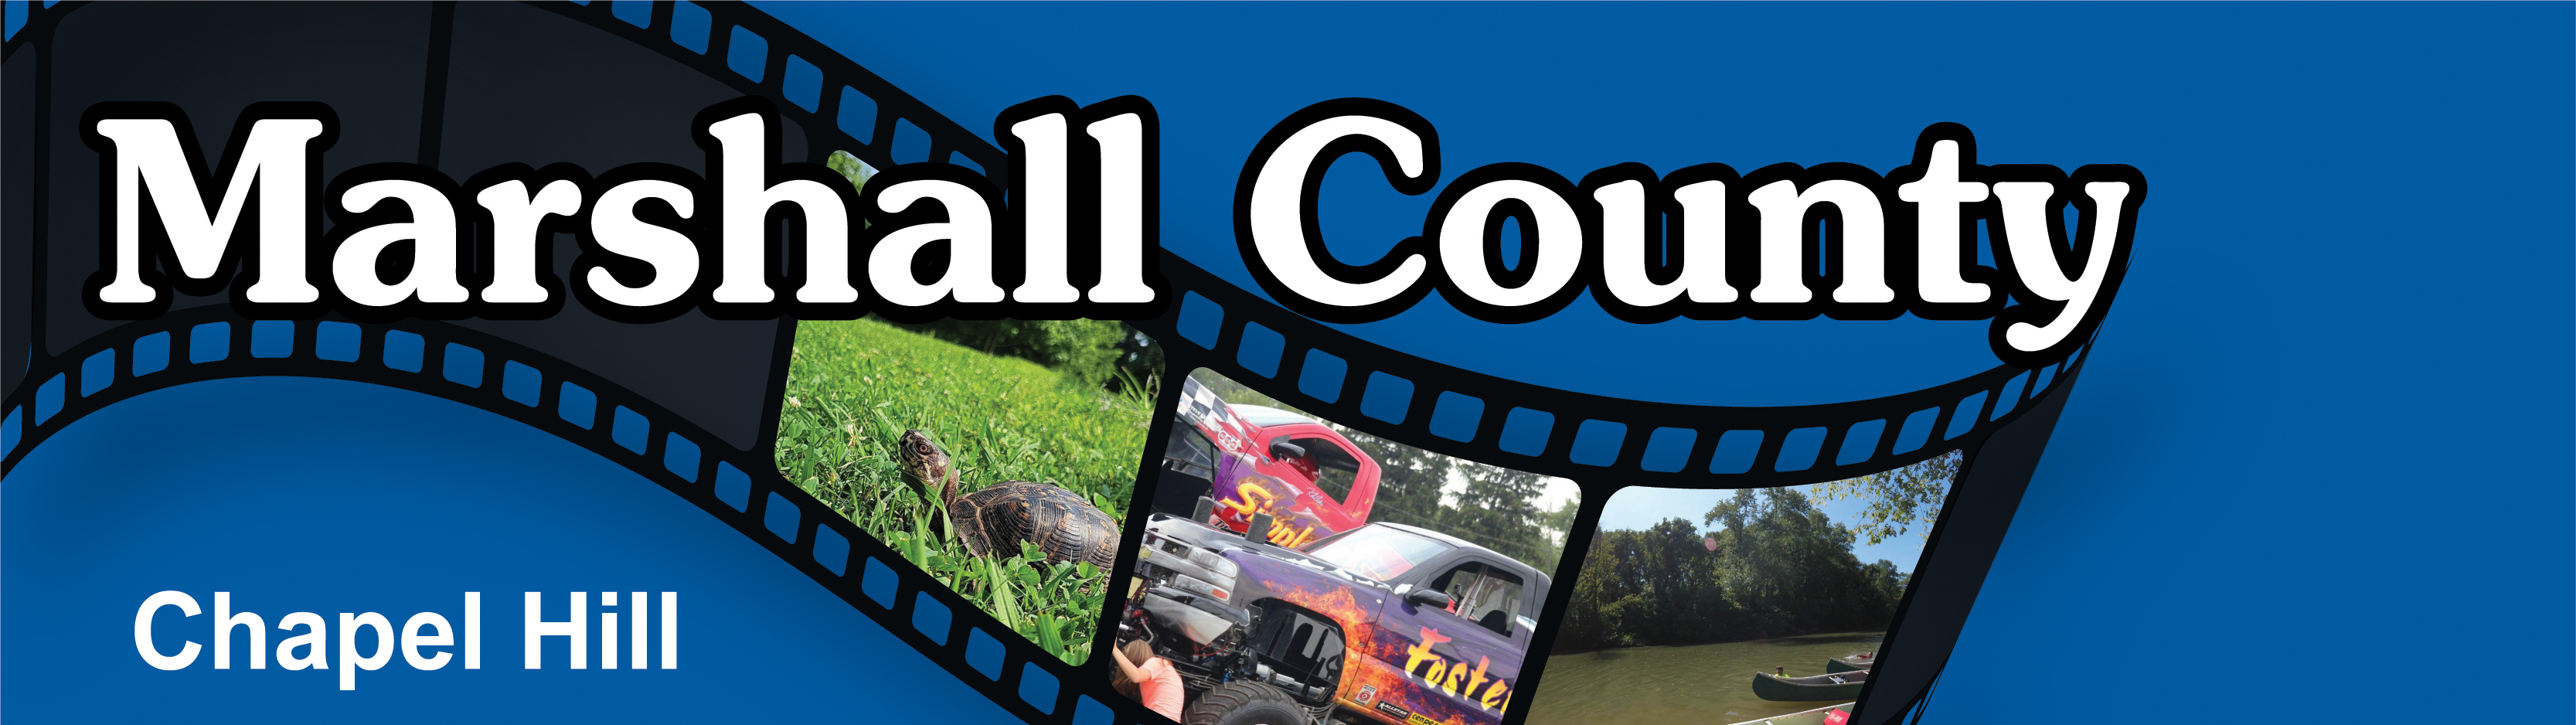 marshall county header